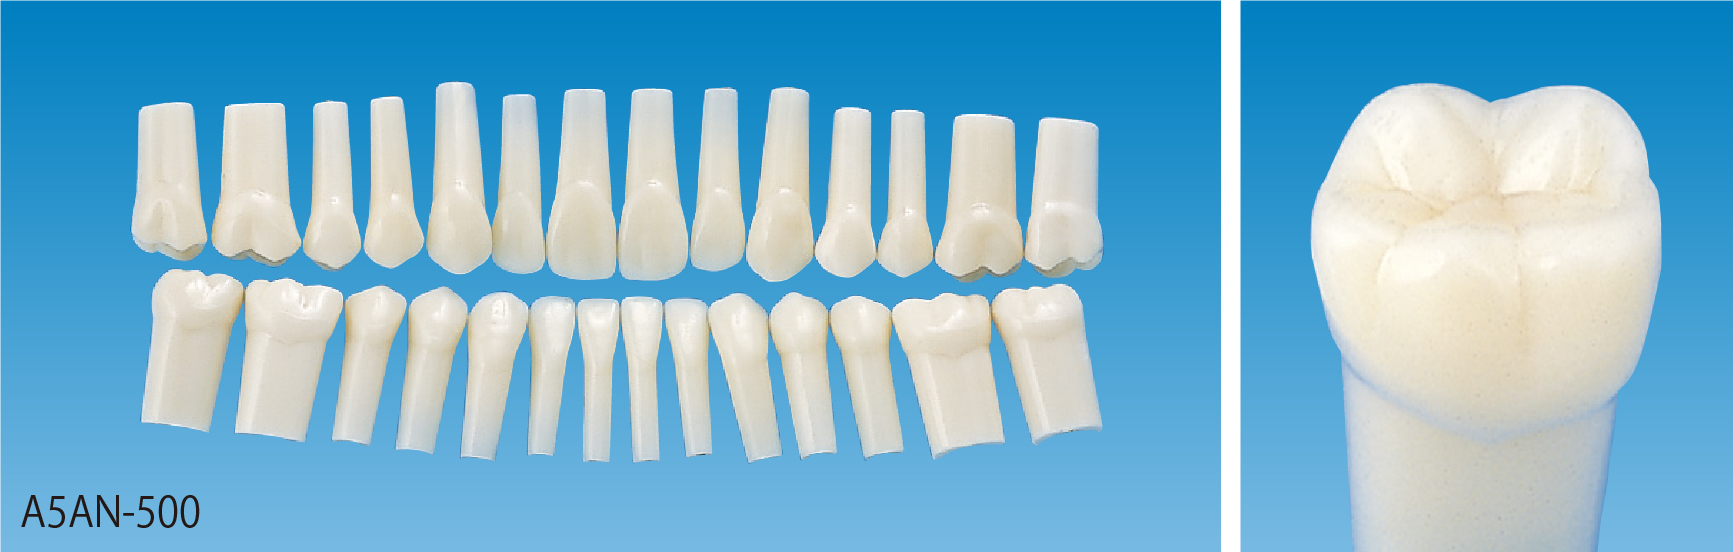 標準実習用模型歯 [A5AN-500]